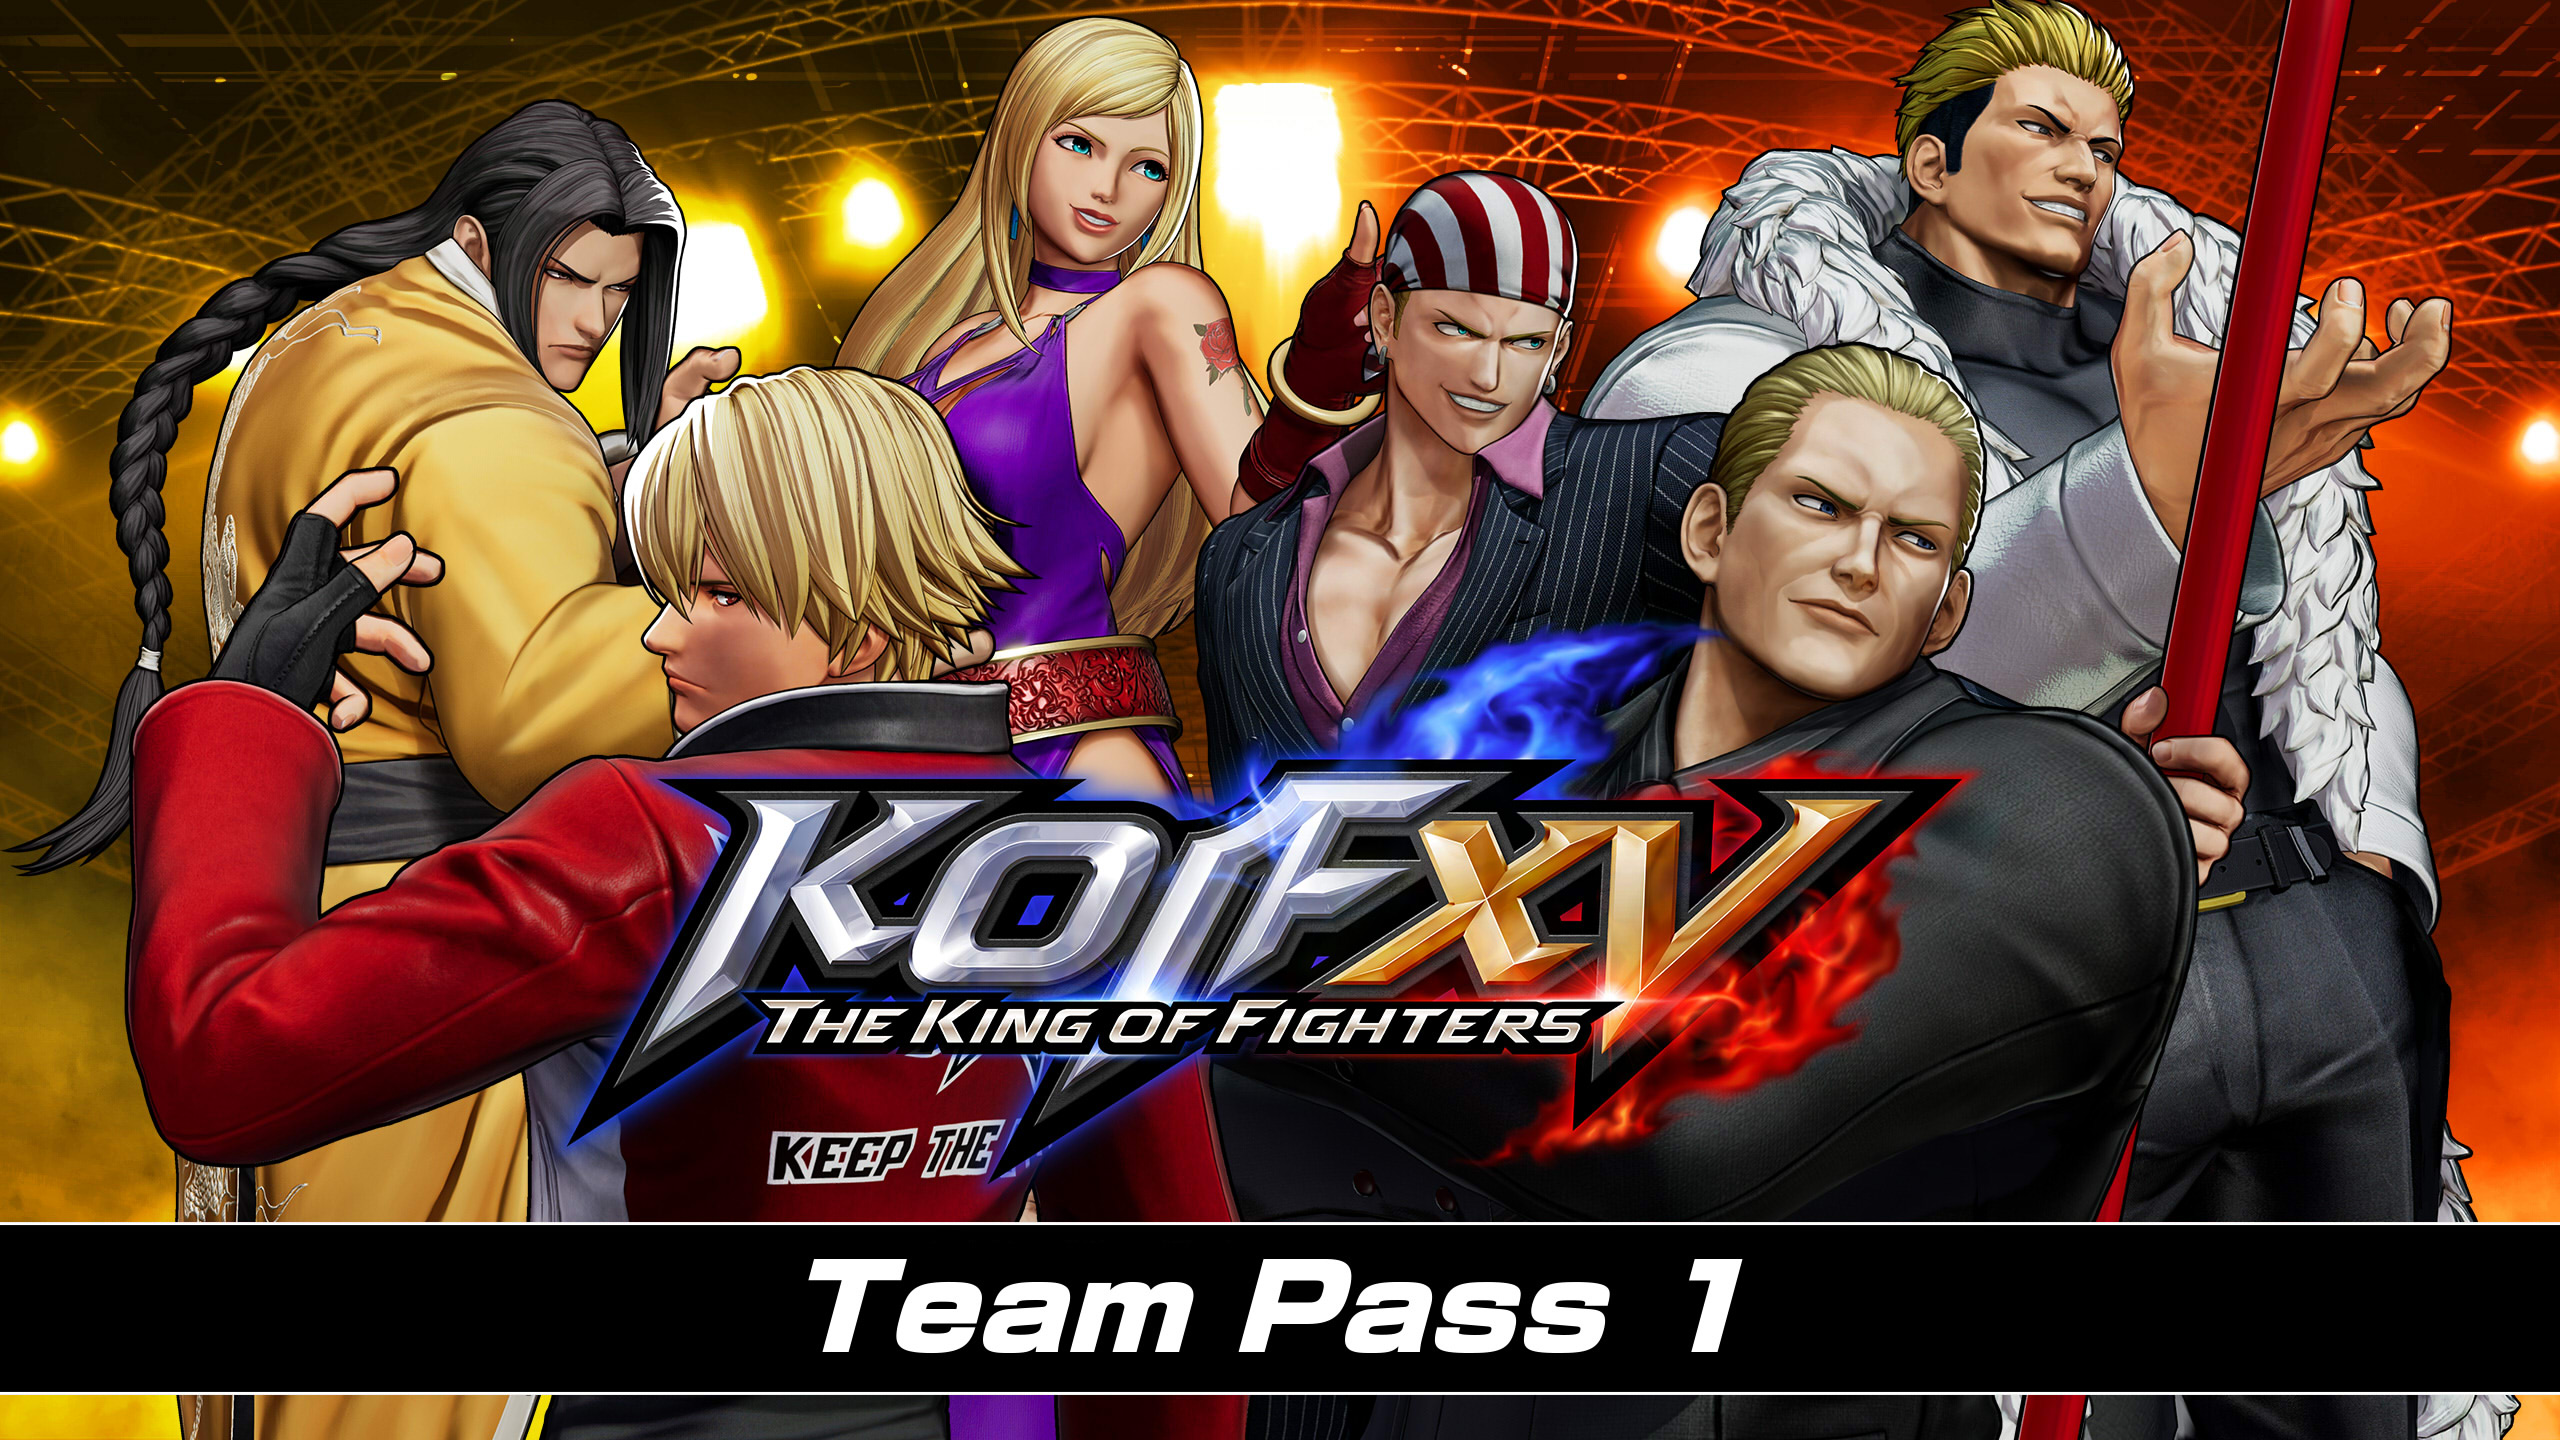 THE KING OF FIGHTERS XV - Team Pass 1 DLC EU PS4 CD Key, $25.98